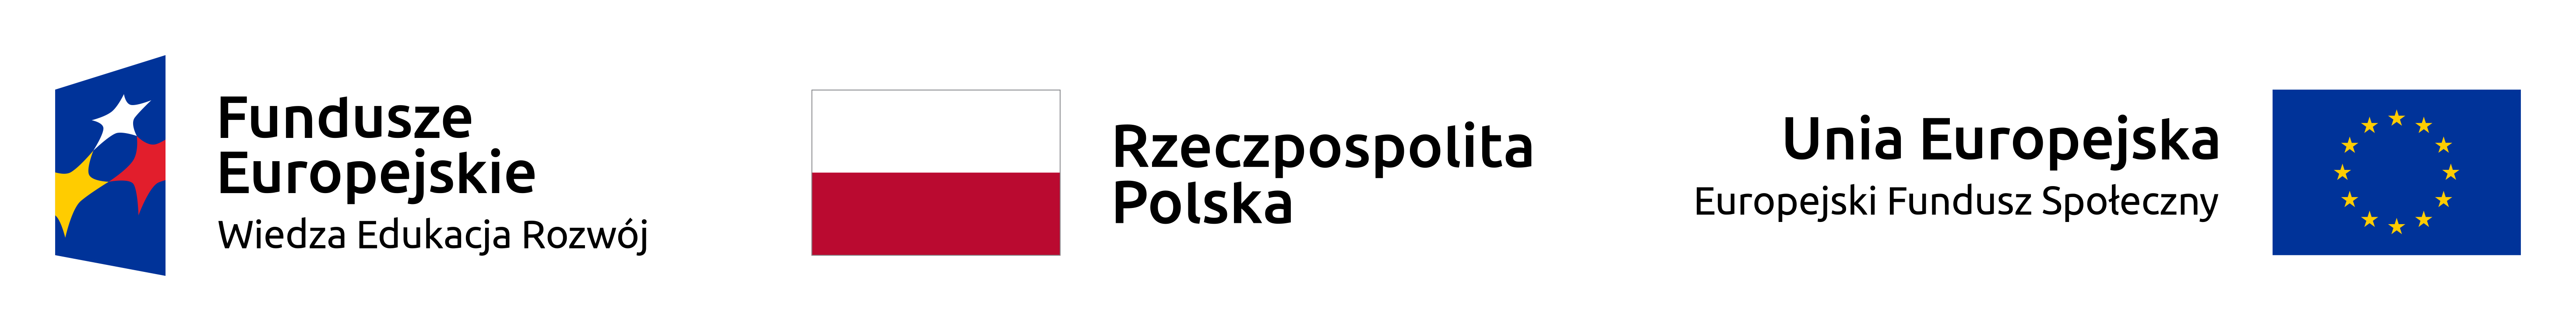 logotyp projektu: trzy loga wraz z napisami. Fundusze Euopejskie Wiedza Eduksacja Rozwój, flaga Rzeczypospolitej Polskiej, flaga Unii Europejskiej Europejski Fundusz Społeczny